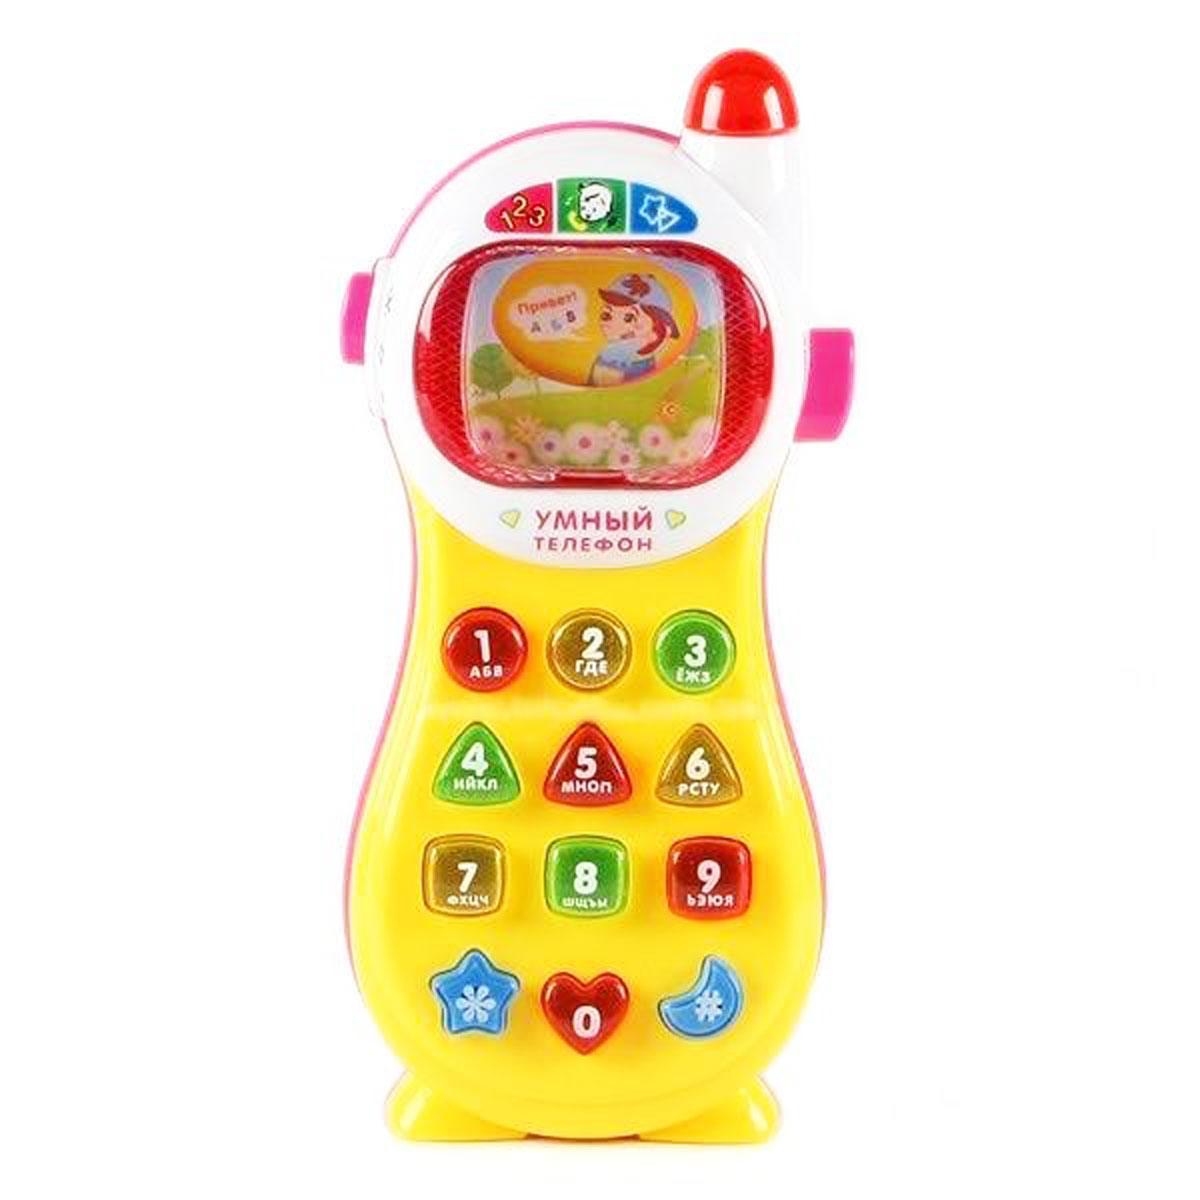 Развивающая игрушка 'Умный Телефон' 2 вида